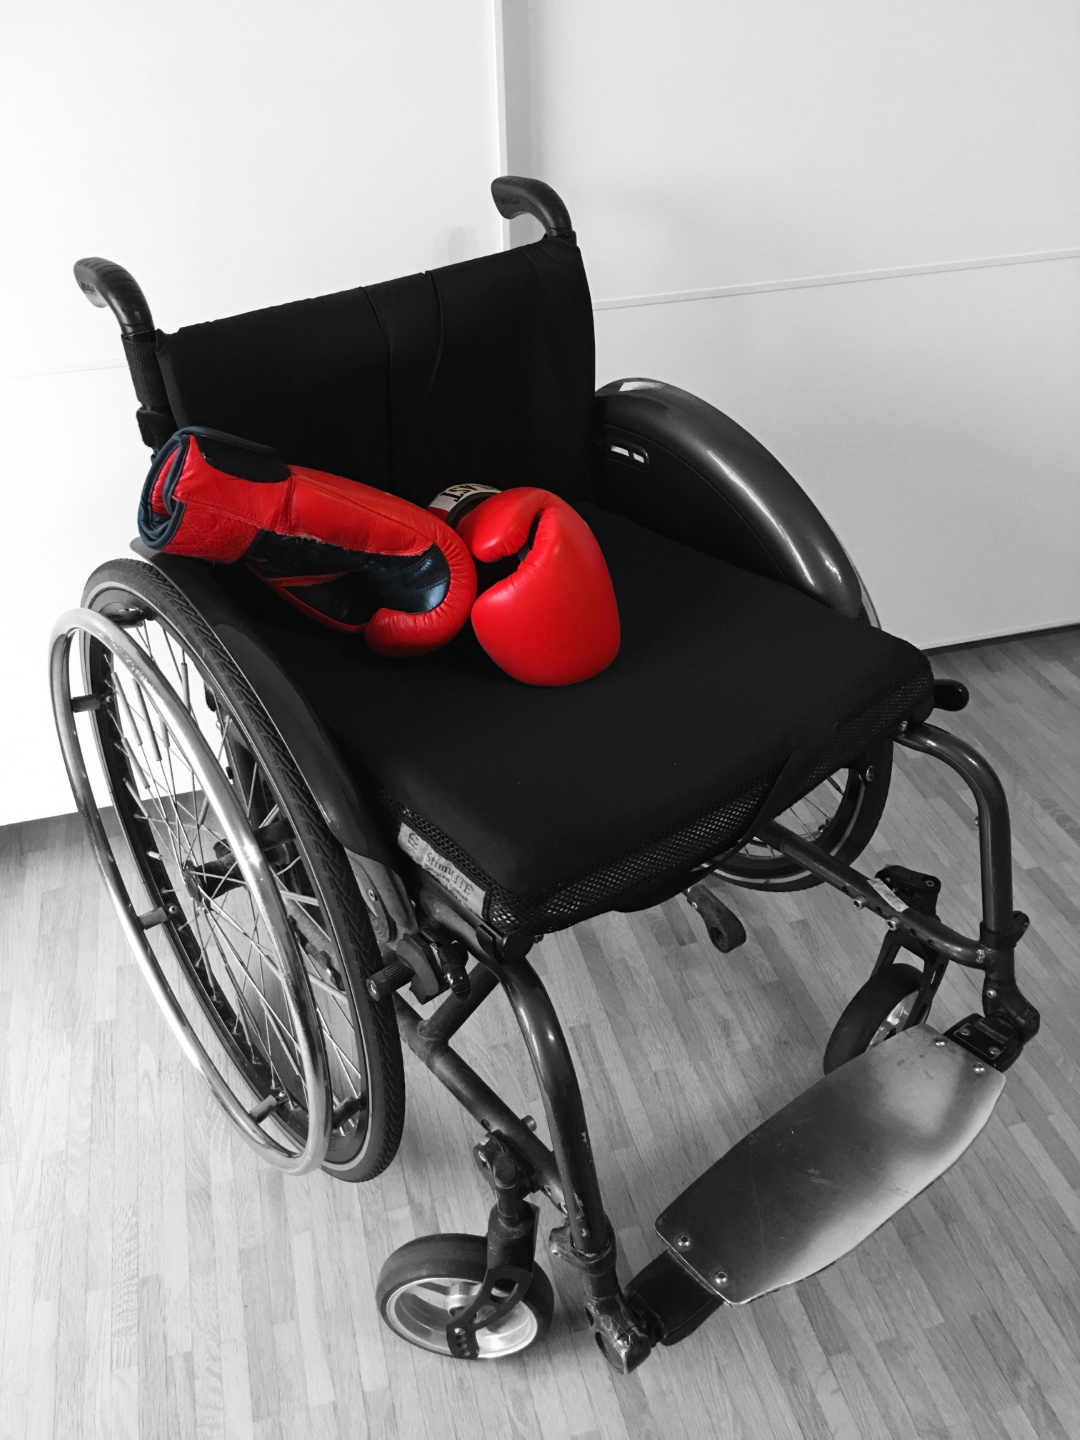 Auf dem Foto zu sehen ist ein schwarzer Rollstuhl. Darauf liegen zwei rote Boxhandschuhe.